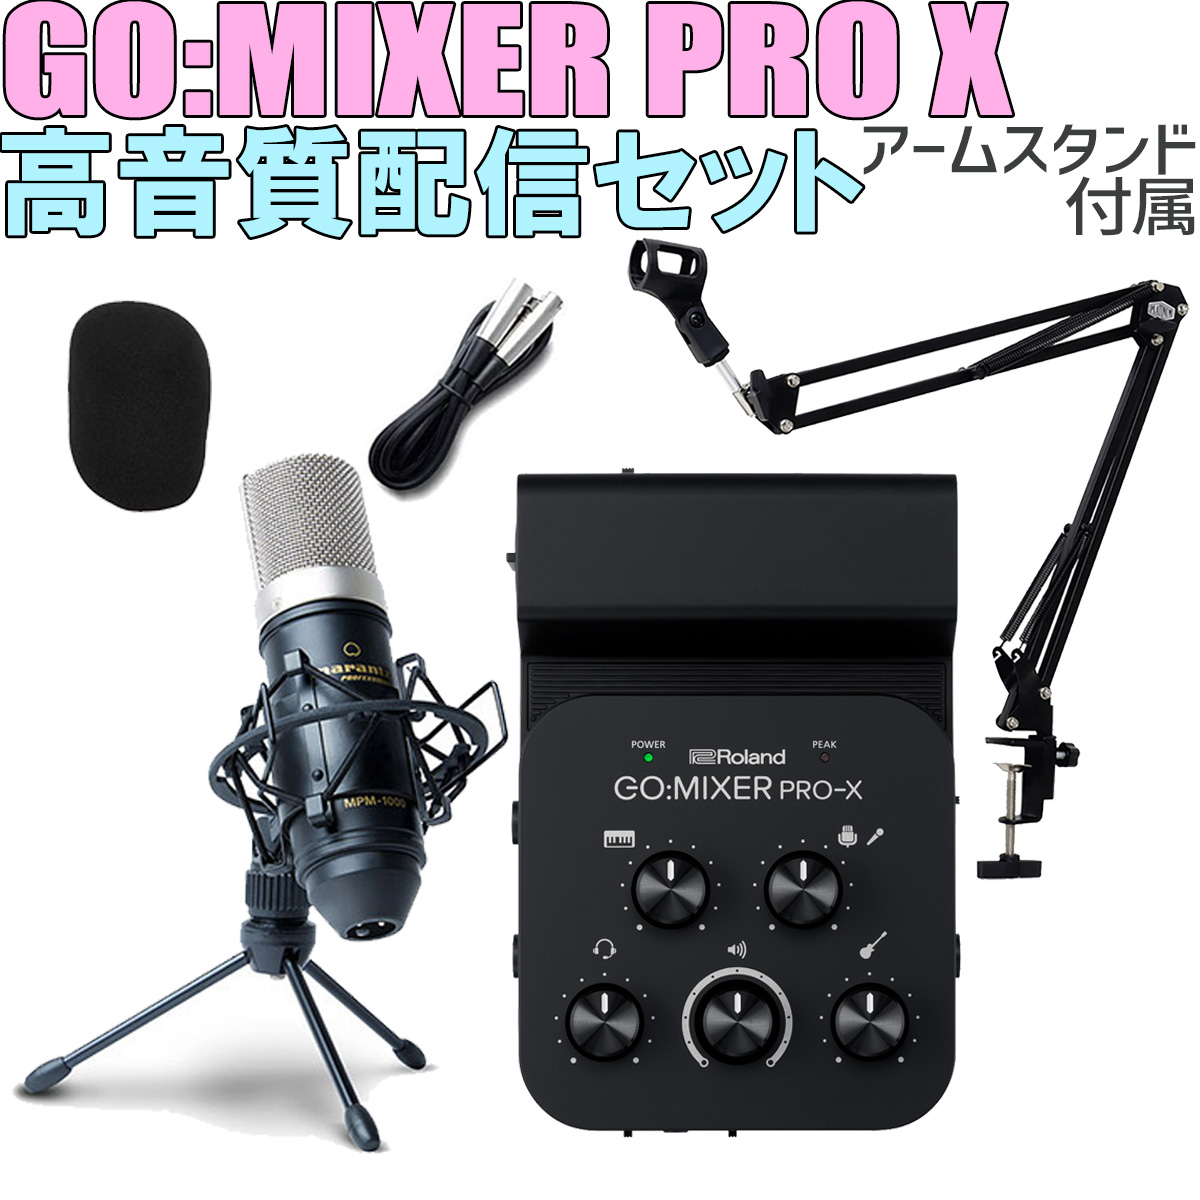 [キャリングポーチプレゼント] Roland GO:MIXER PRO-X MPM-1000J 高音質配信セット アームスタンド付属 スマホ用インターフェース ローランド 